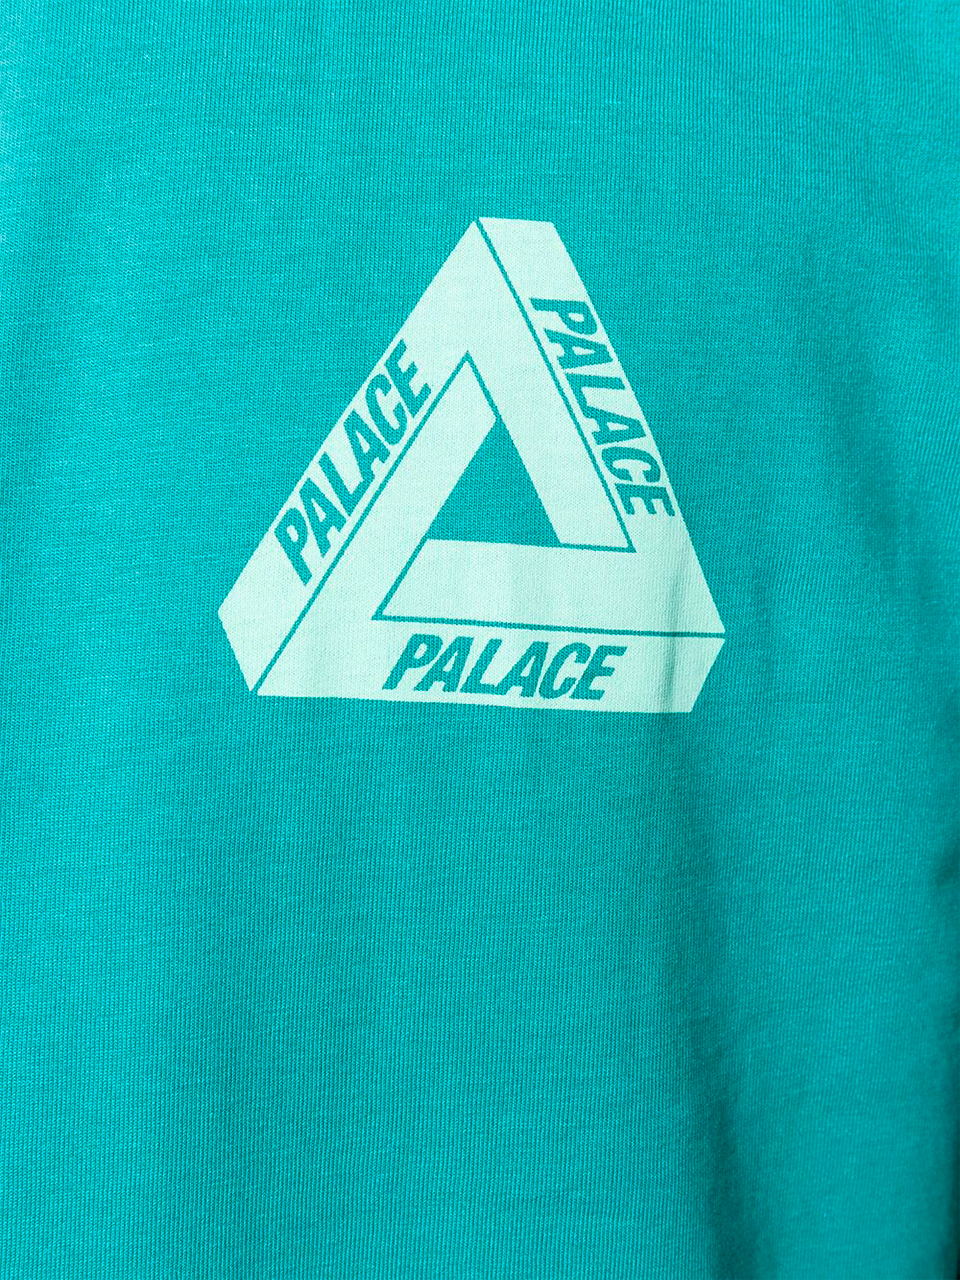 Imagem de: Camiseta Palace Ciano com Logo